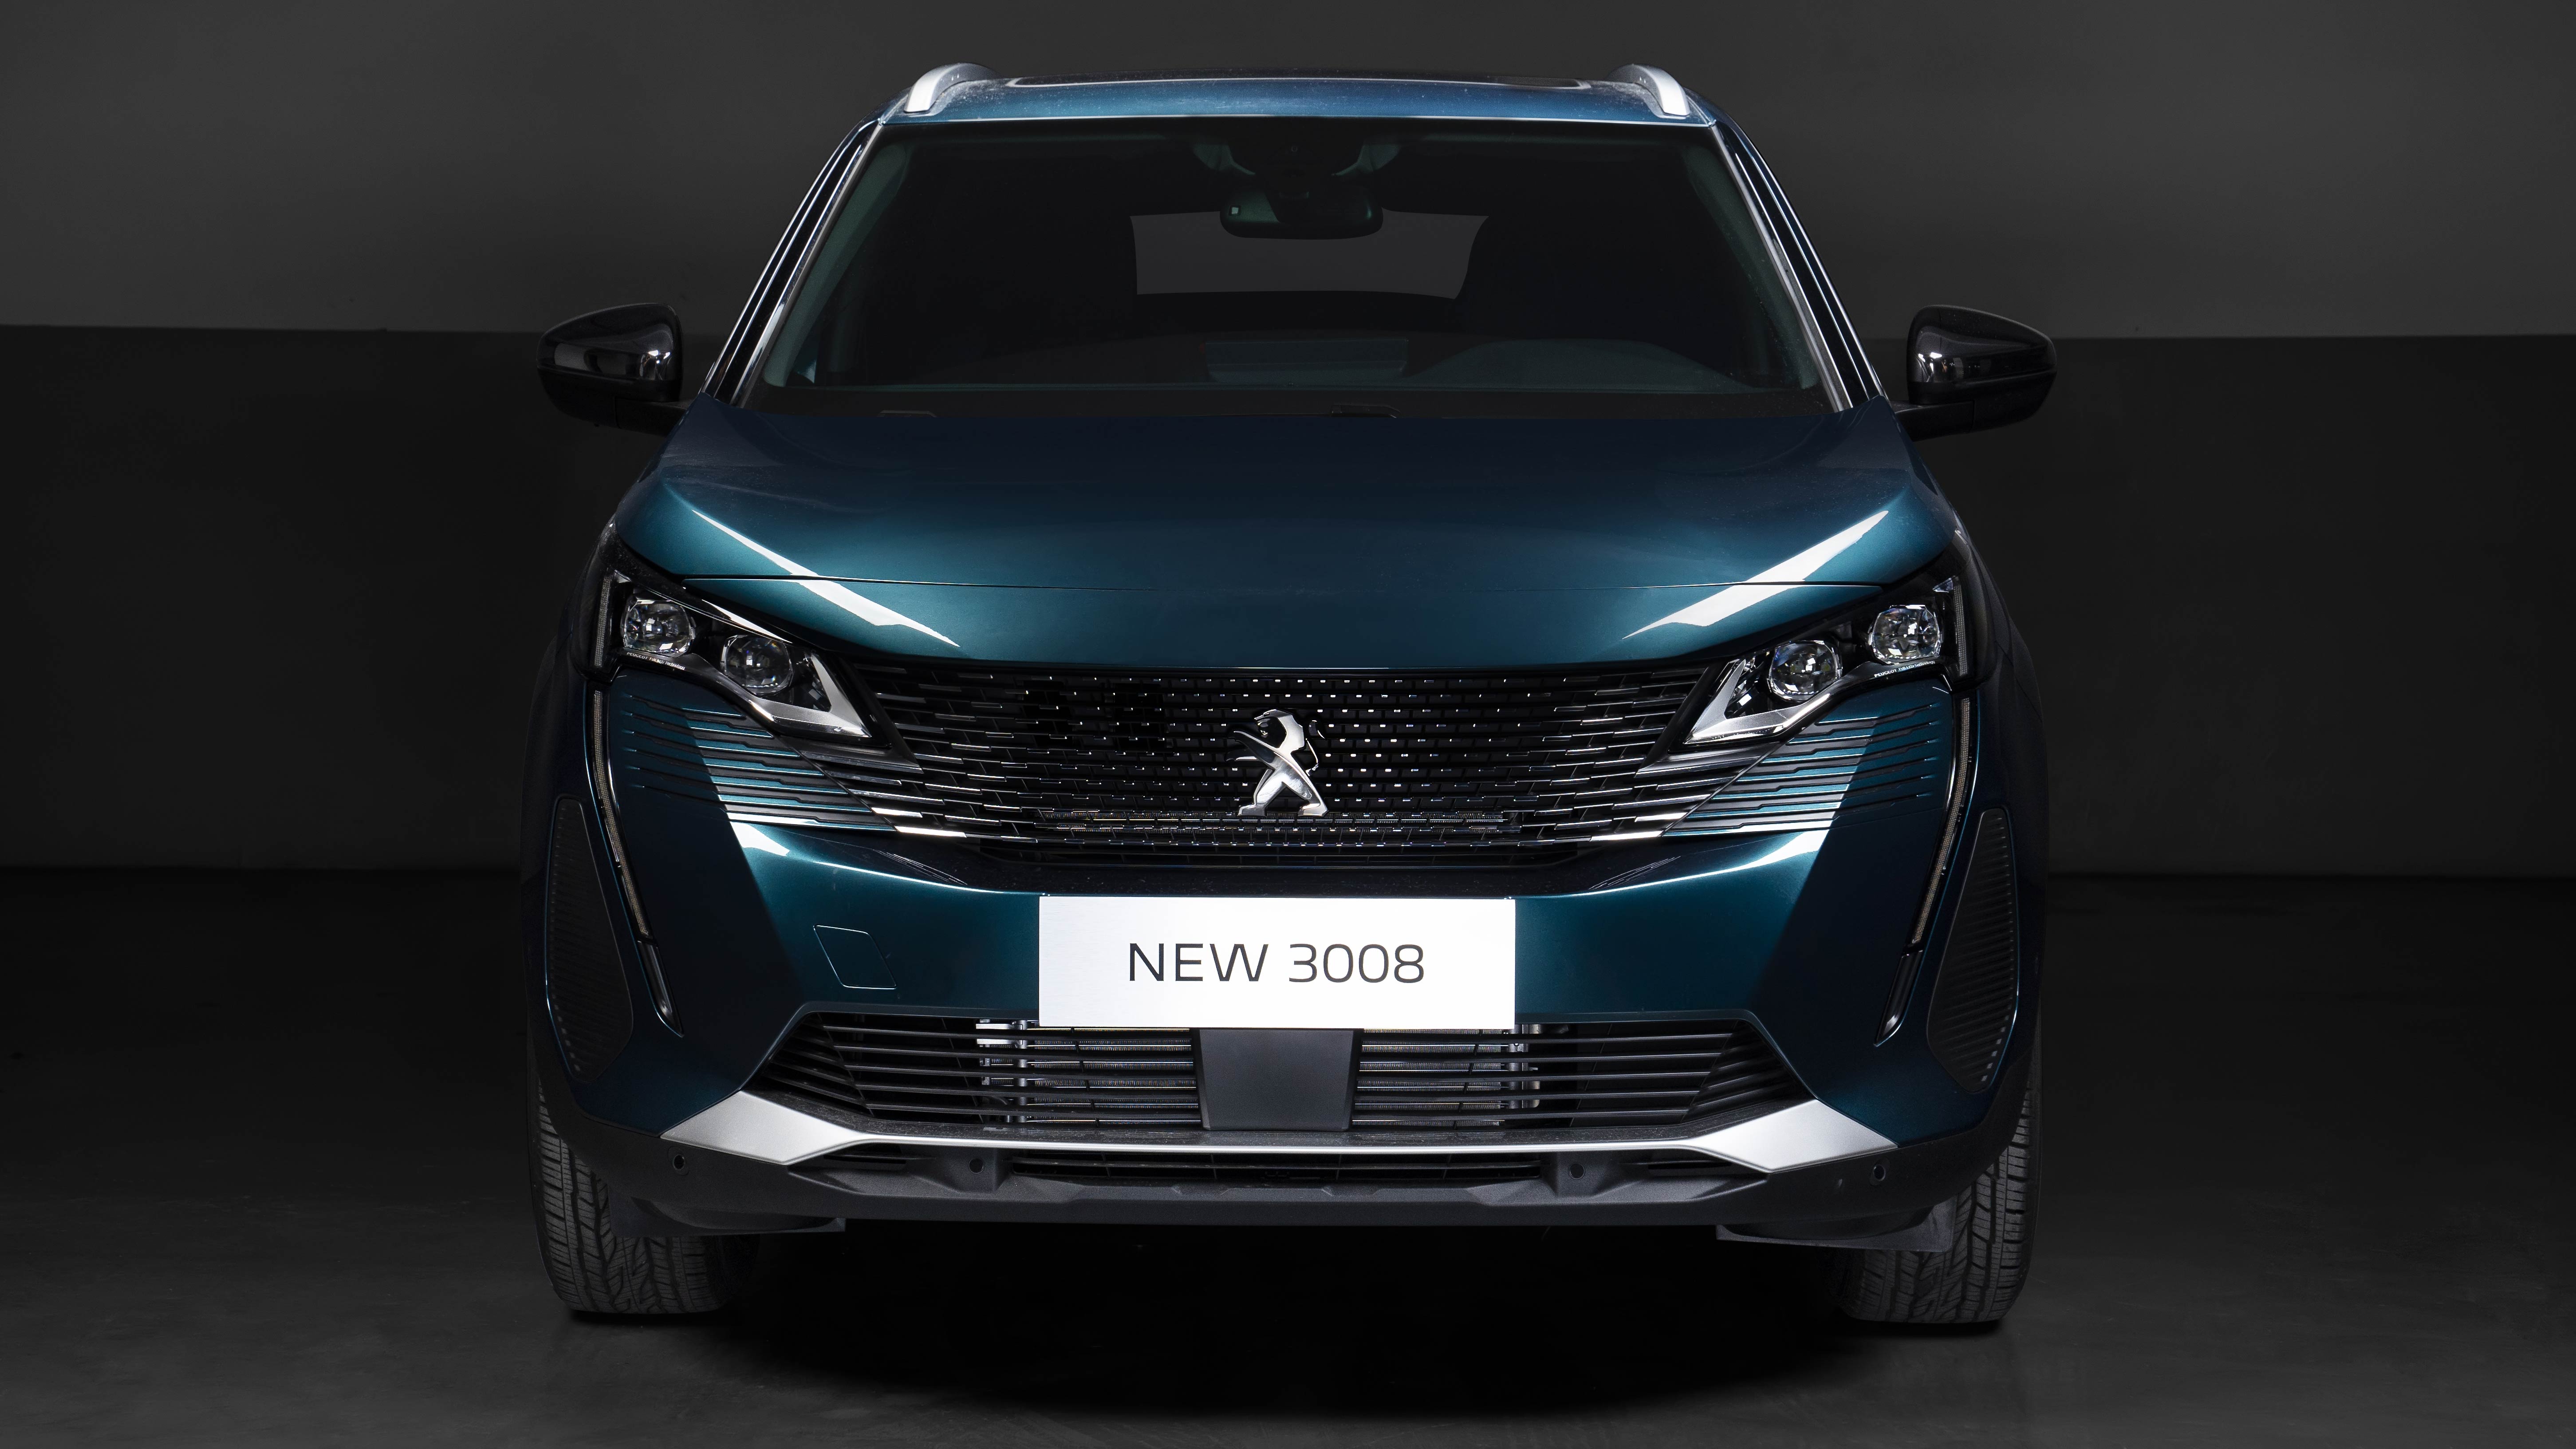 New Peugeot 3008 ra mắt tại Việt Nam, giá ưu đãi từ 989 triệu đồng new-peugeot-3008.jpg